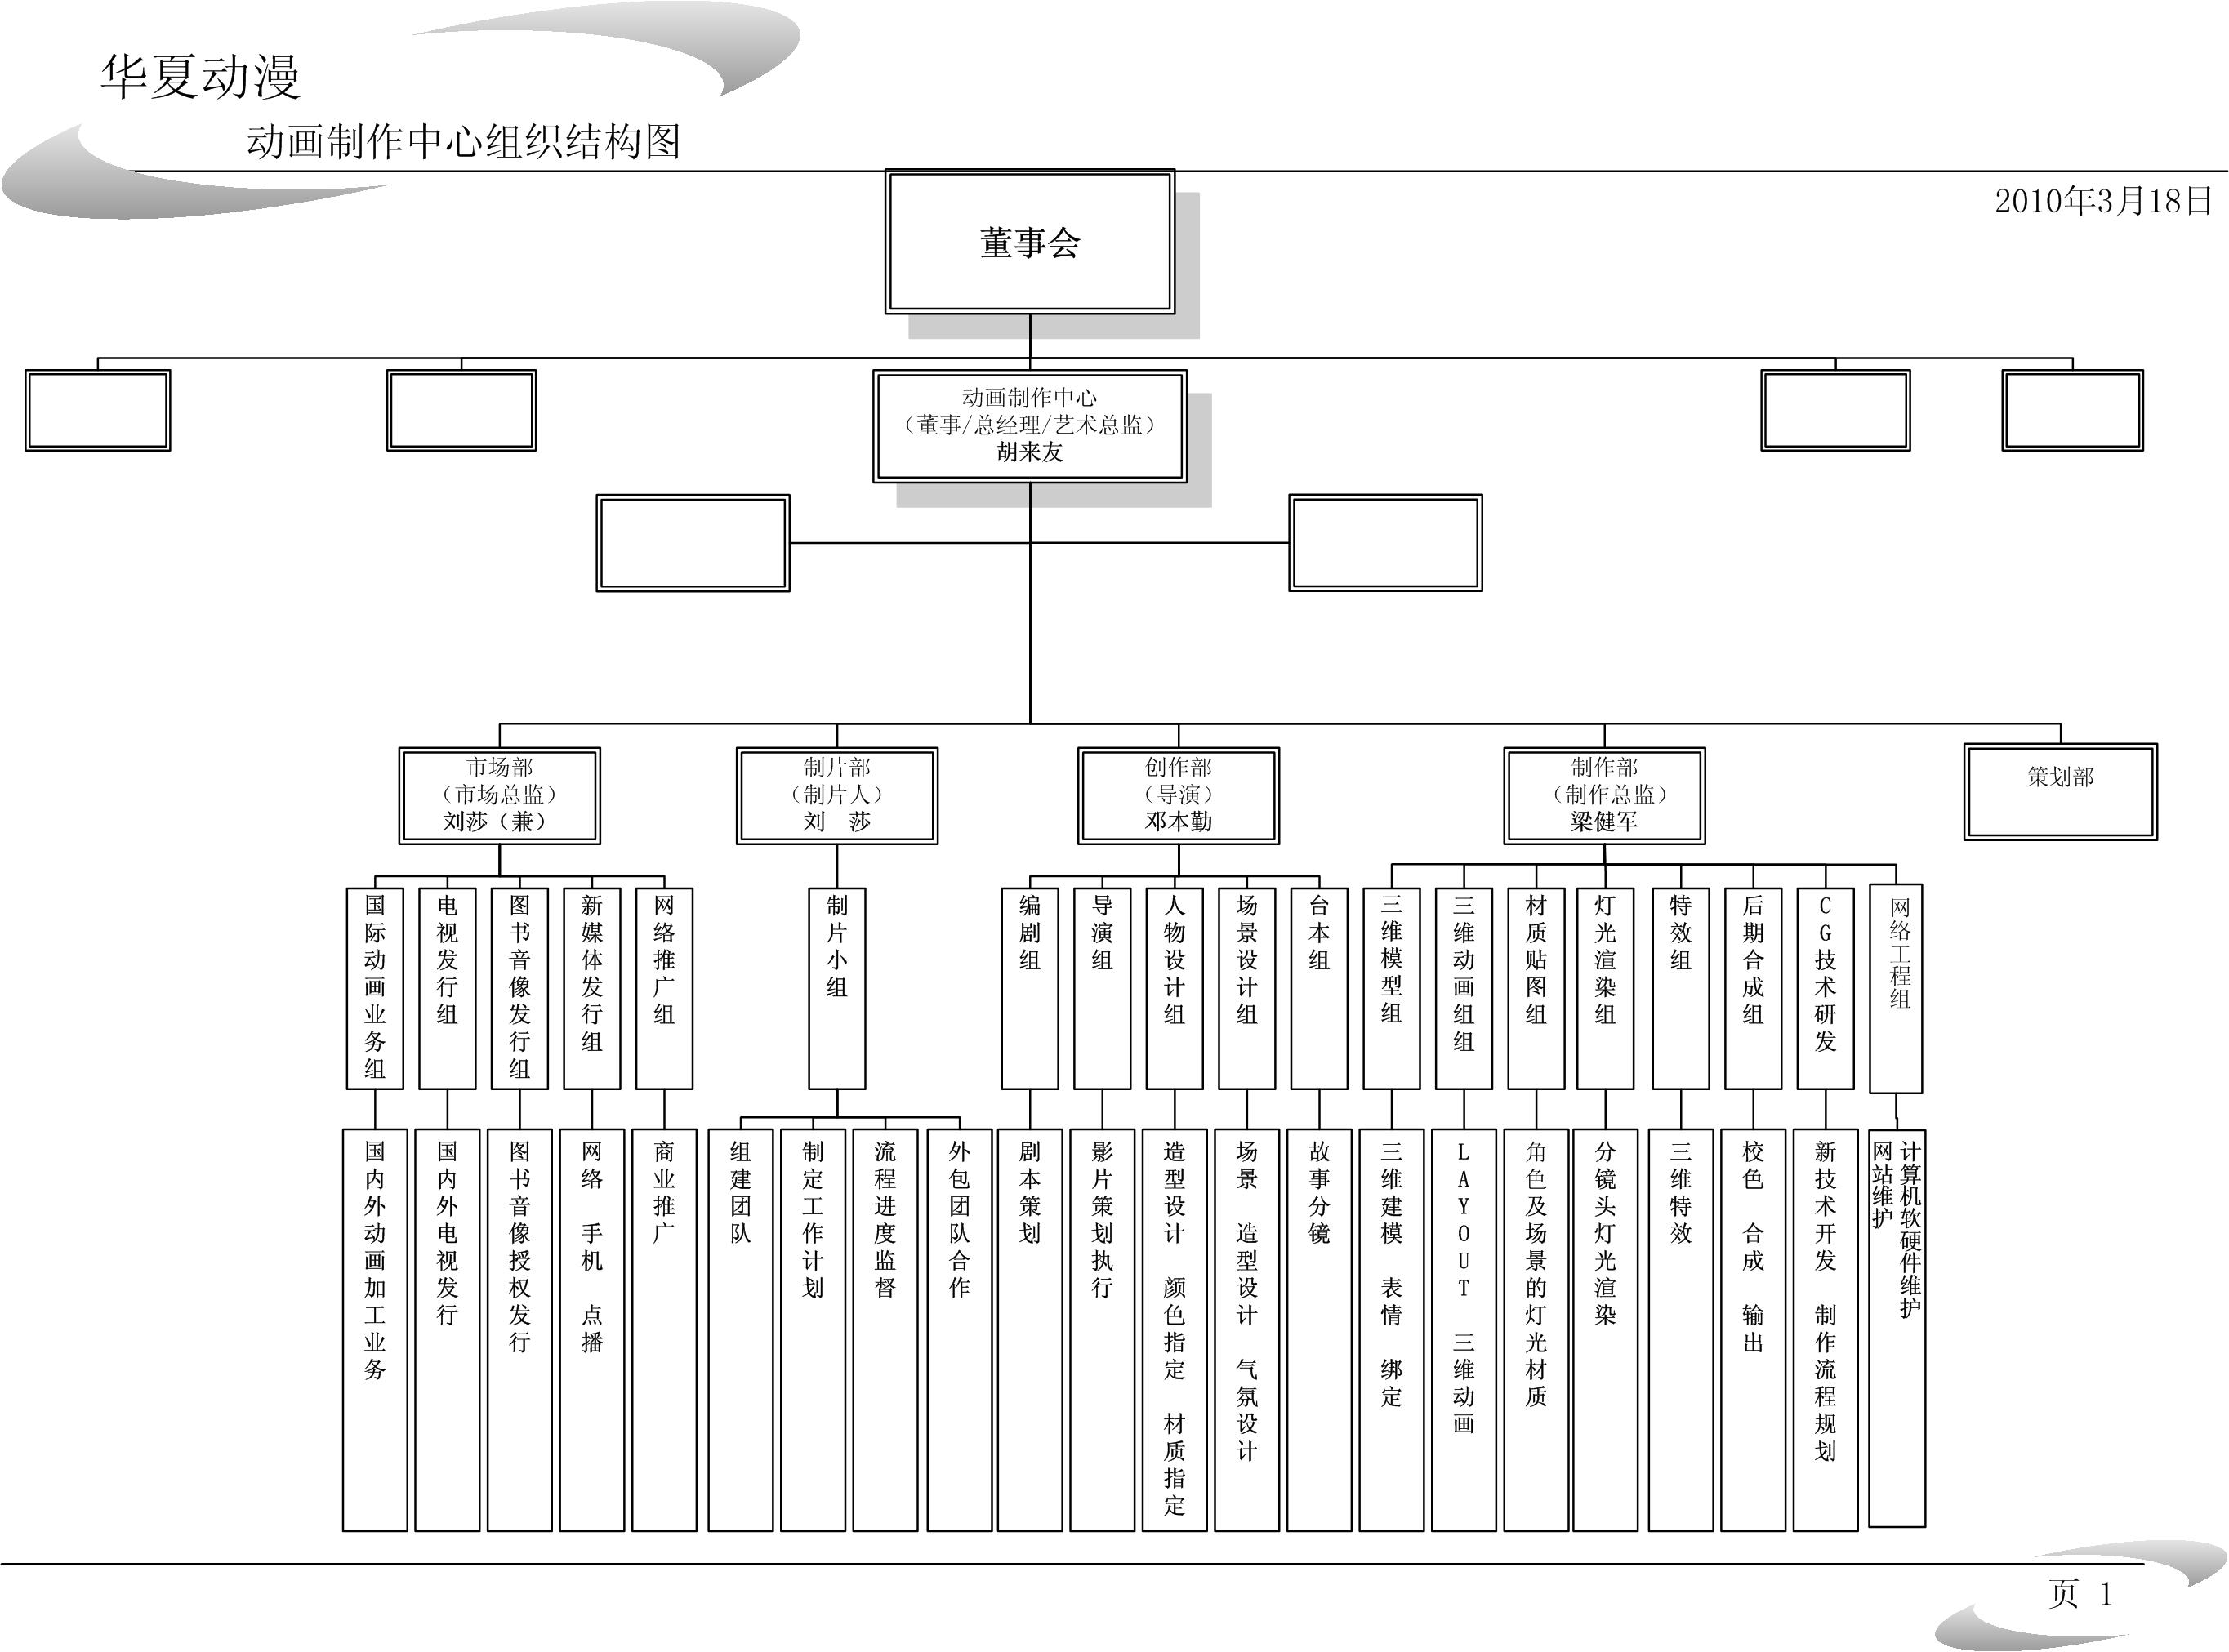 華夏動漫動畫製作中心組織架構圖